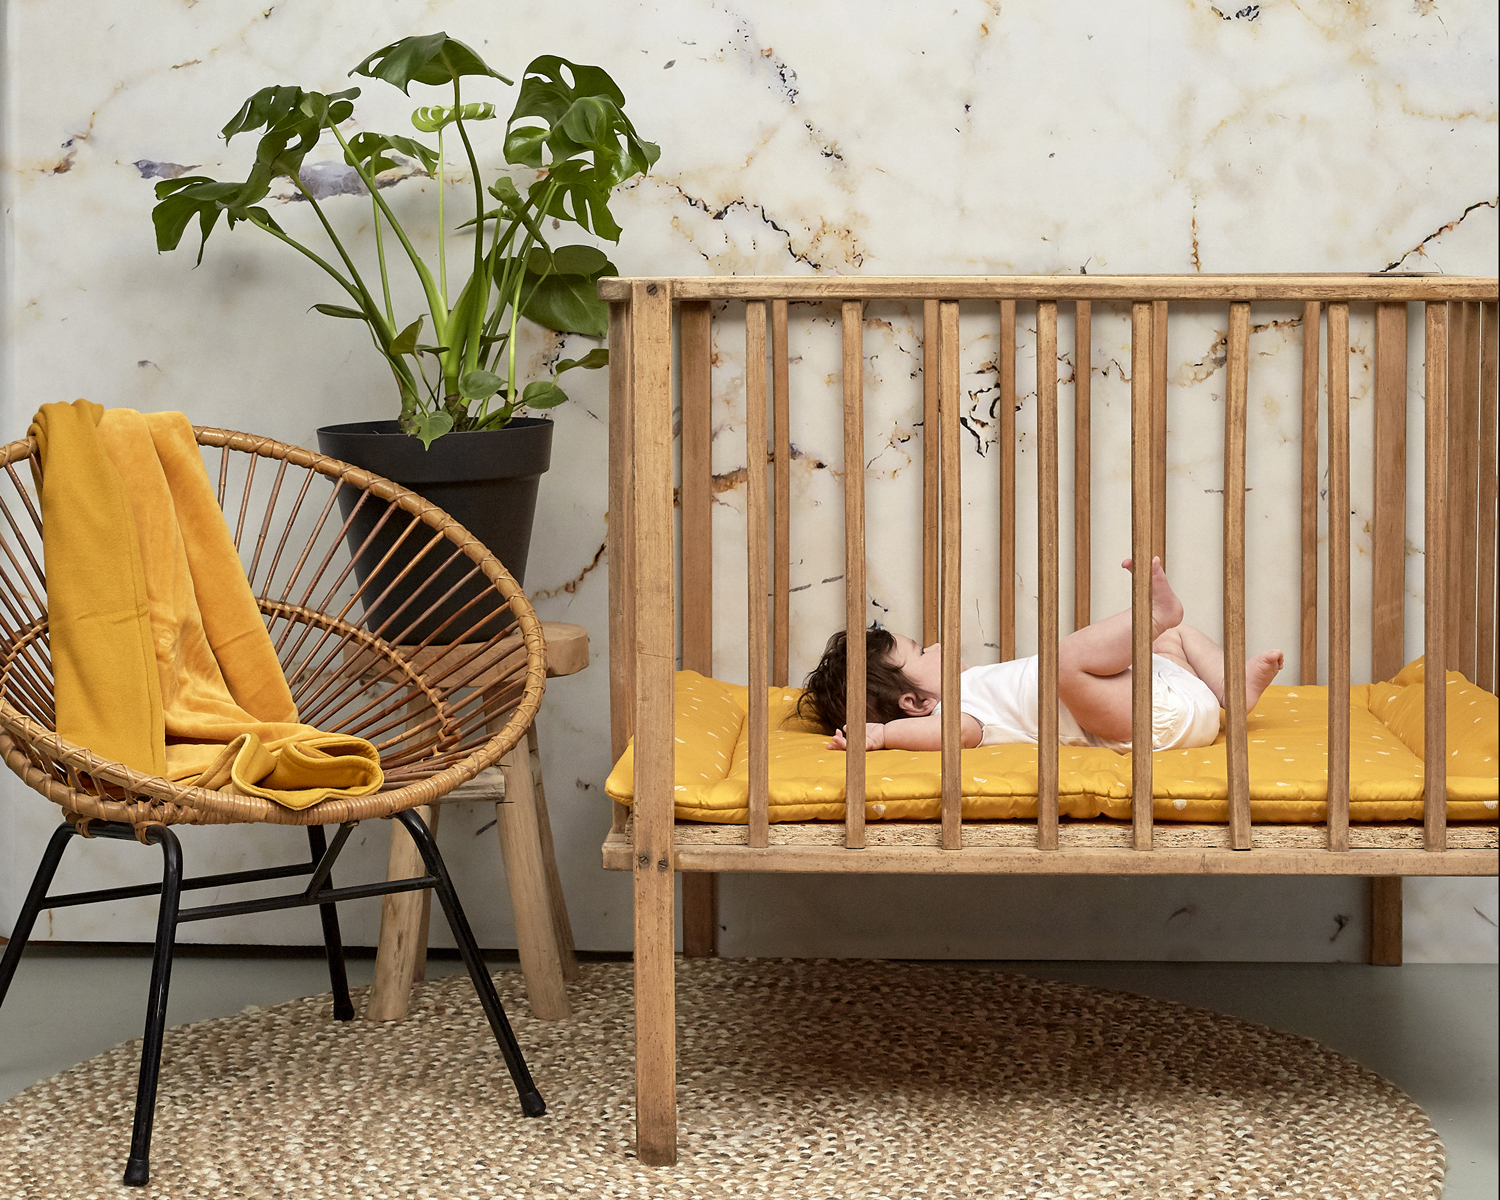 Cot bed blanket Knit Basic velvet - honey gold - 100x150cm